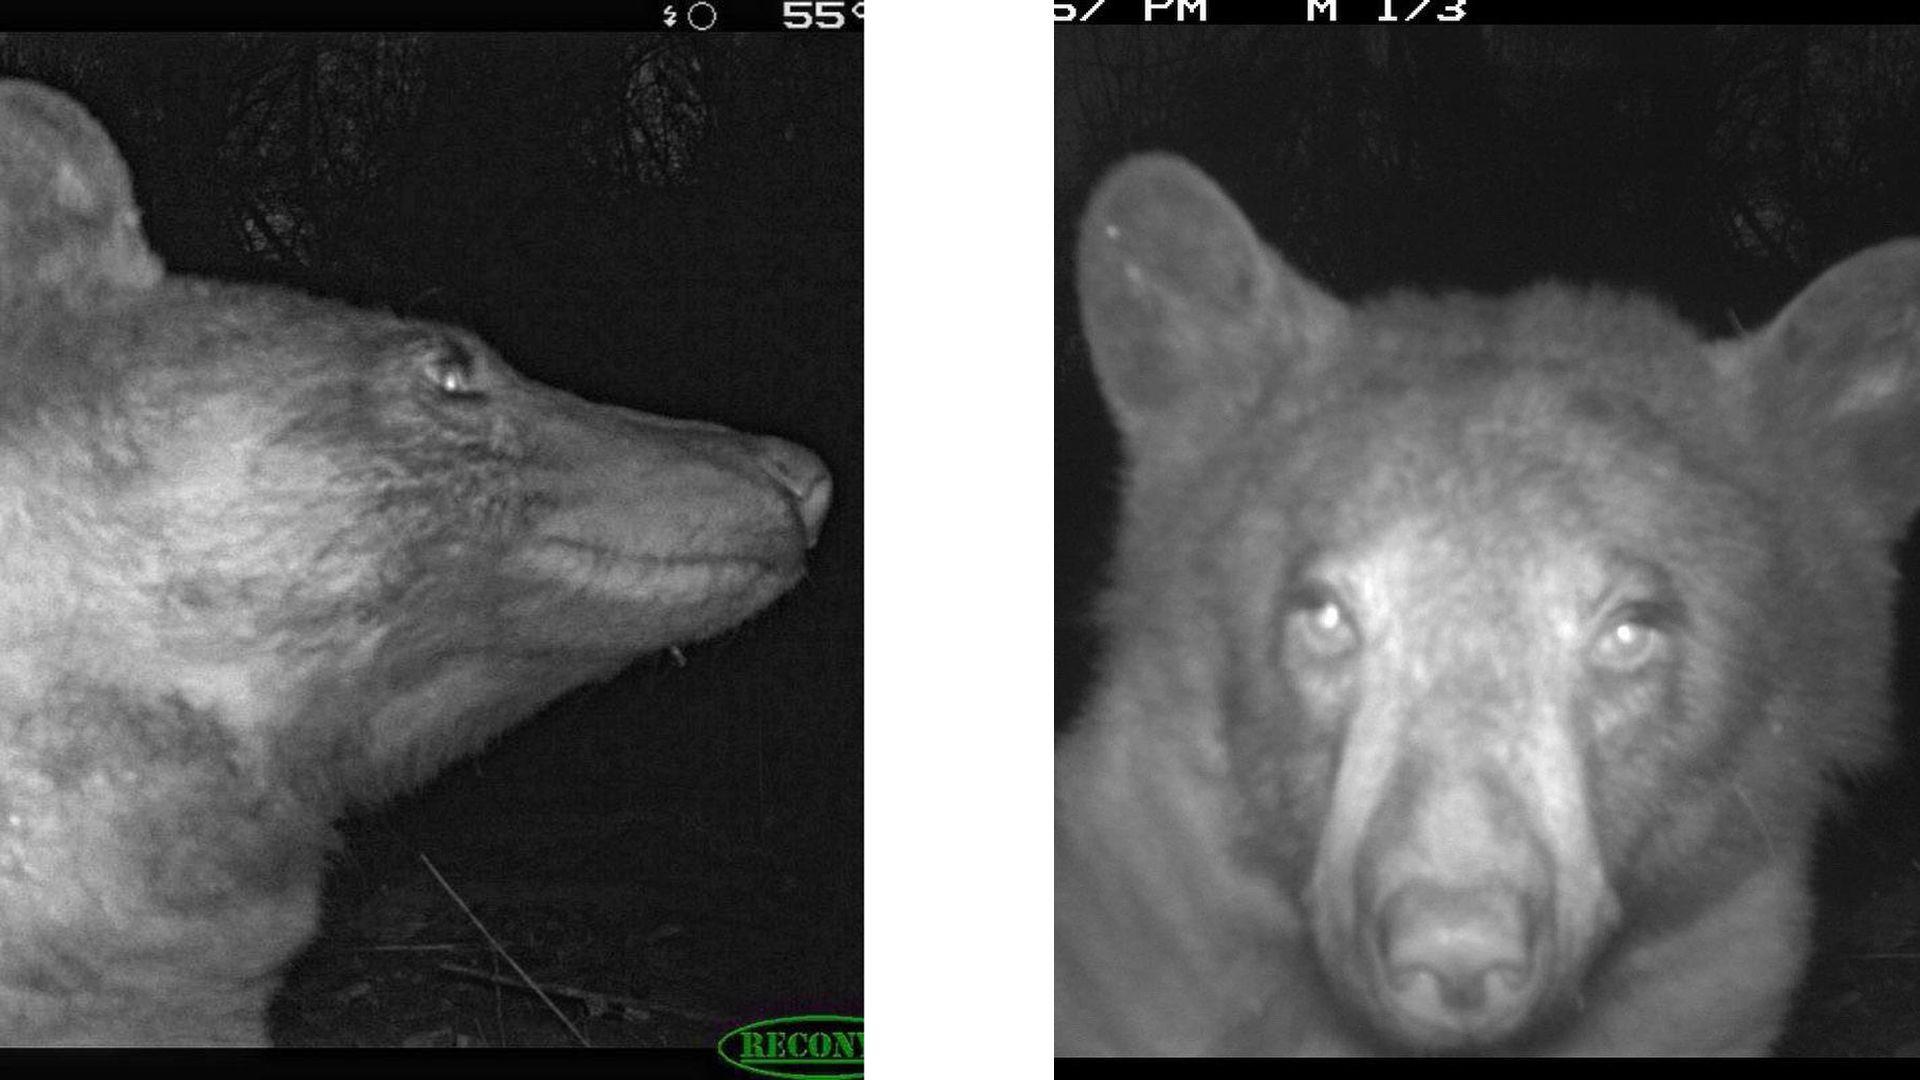 دو سلفی از خرس سیاه در شب جنگل که در یکی رو به دوربین و در دیگری به سمت راست تصویر نگاه می کند